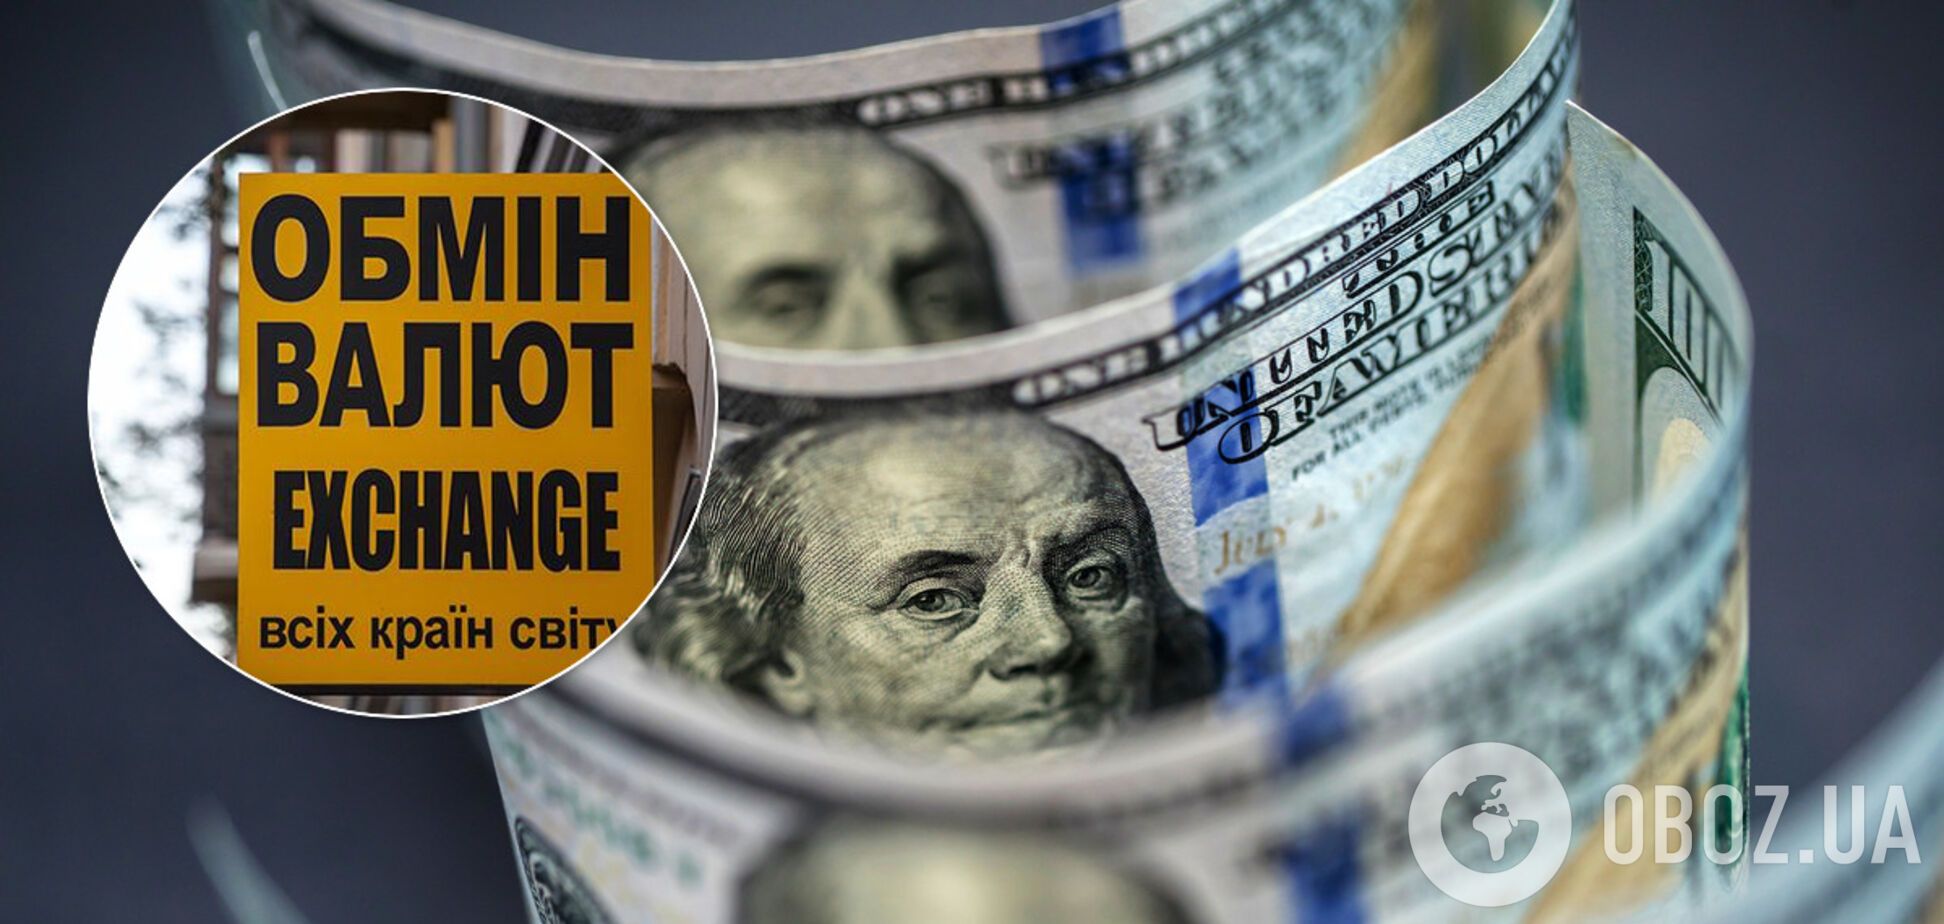 Доллар рухнул до рекордного минимума за карантин: новый курс валют в Украине